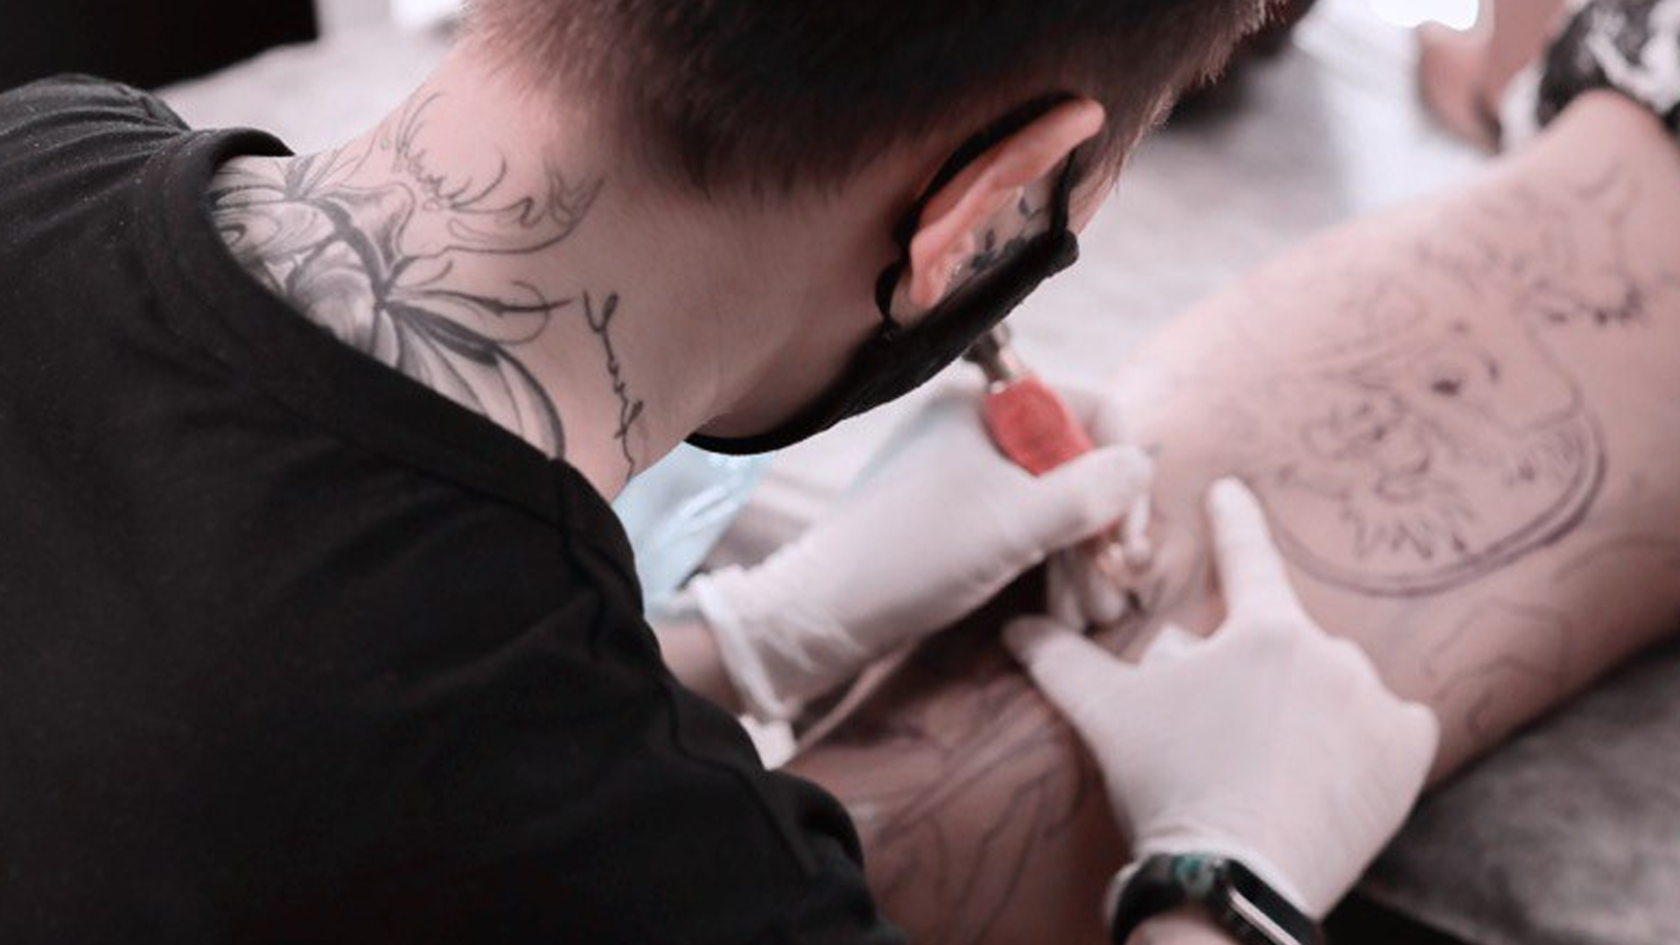 SBK Cтудия Тату в Набережных Челнах - качественное татуирование